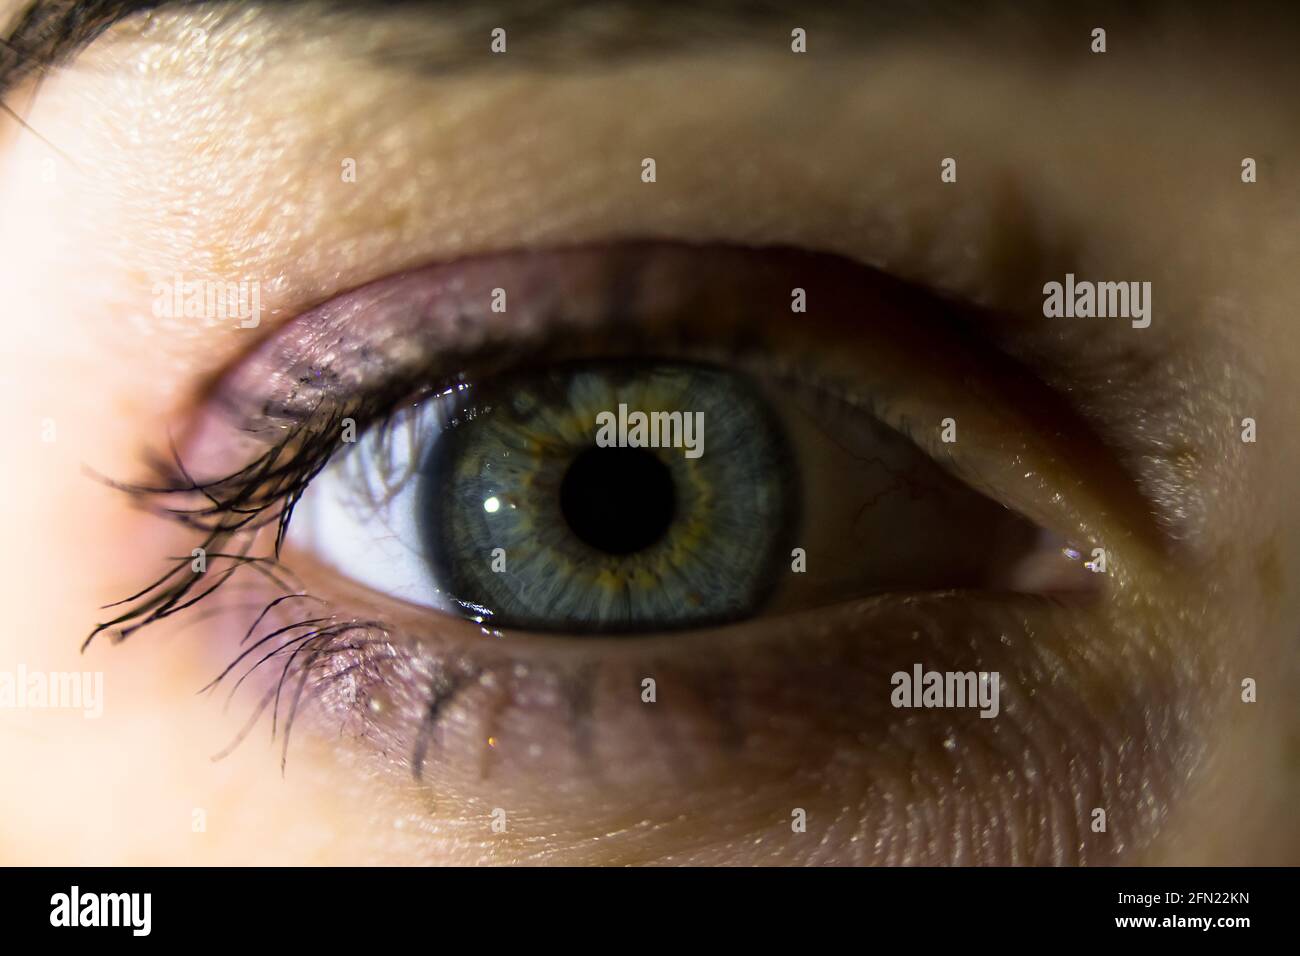 macro photo d'un grand-ouvert un œil humain, globe oculaire avec pupille dilatée et réflexion sur sa surface, couleur grise des yeux, peint et mascara eyeliner, fluf Banque D'Images